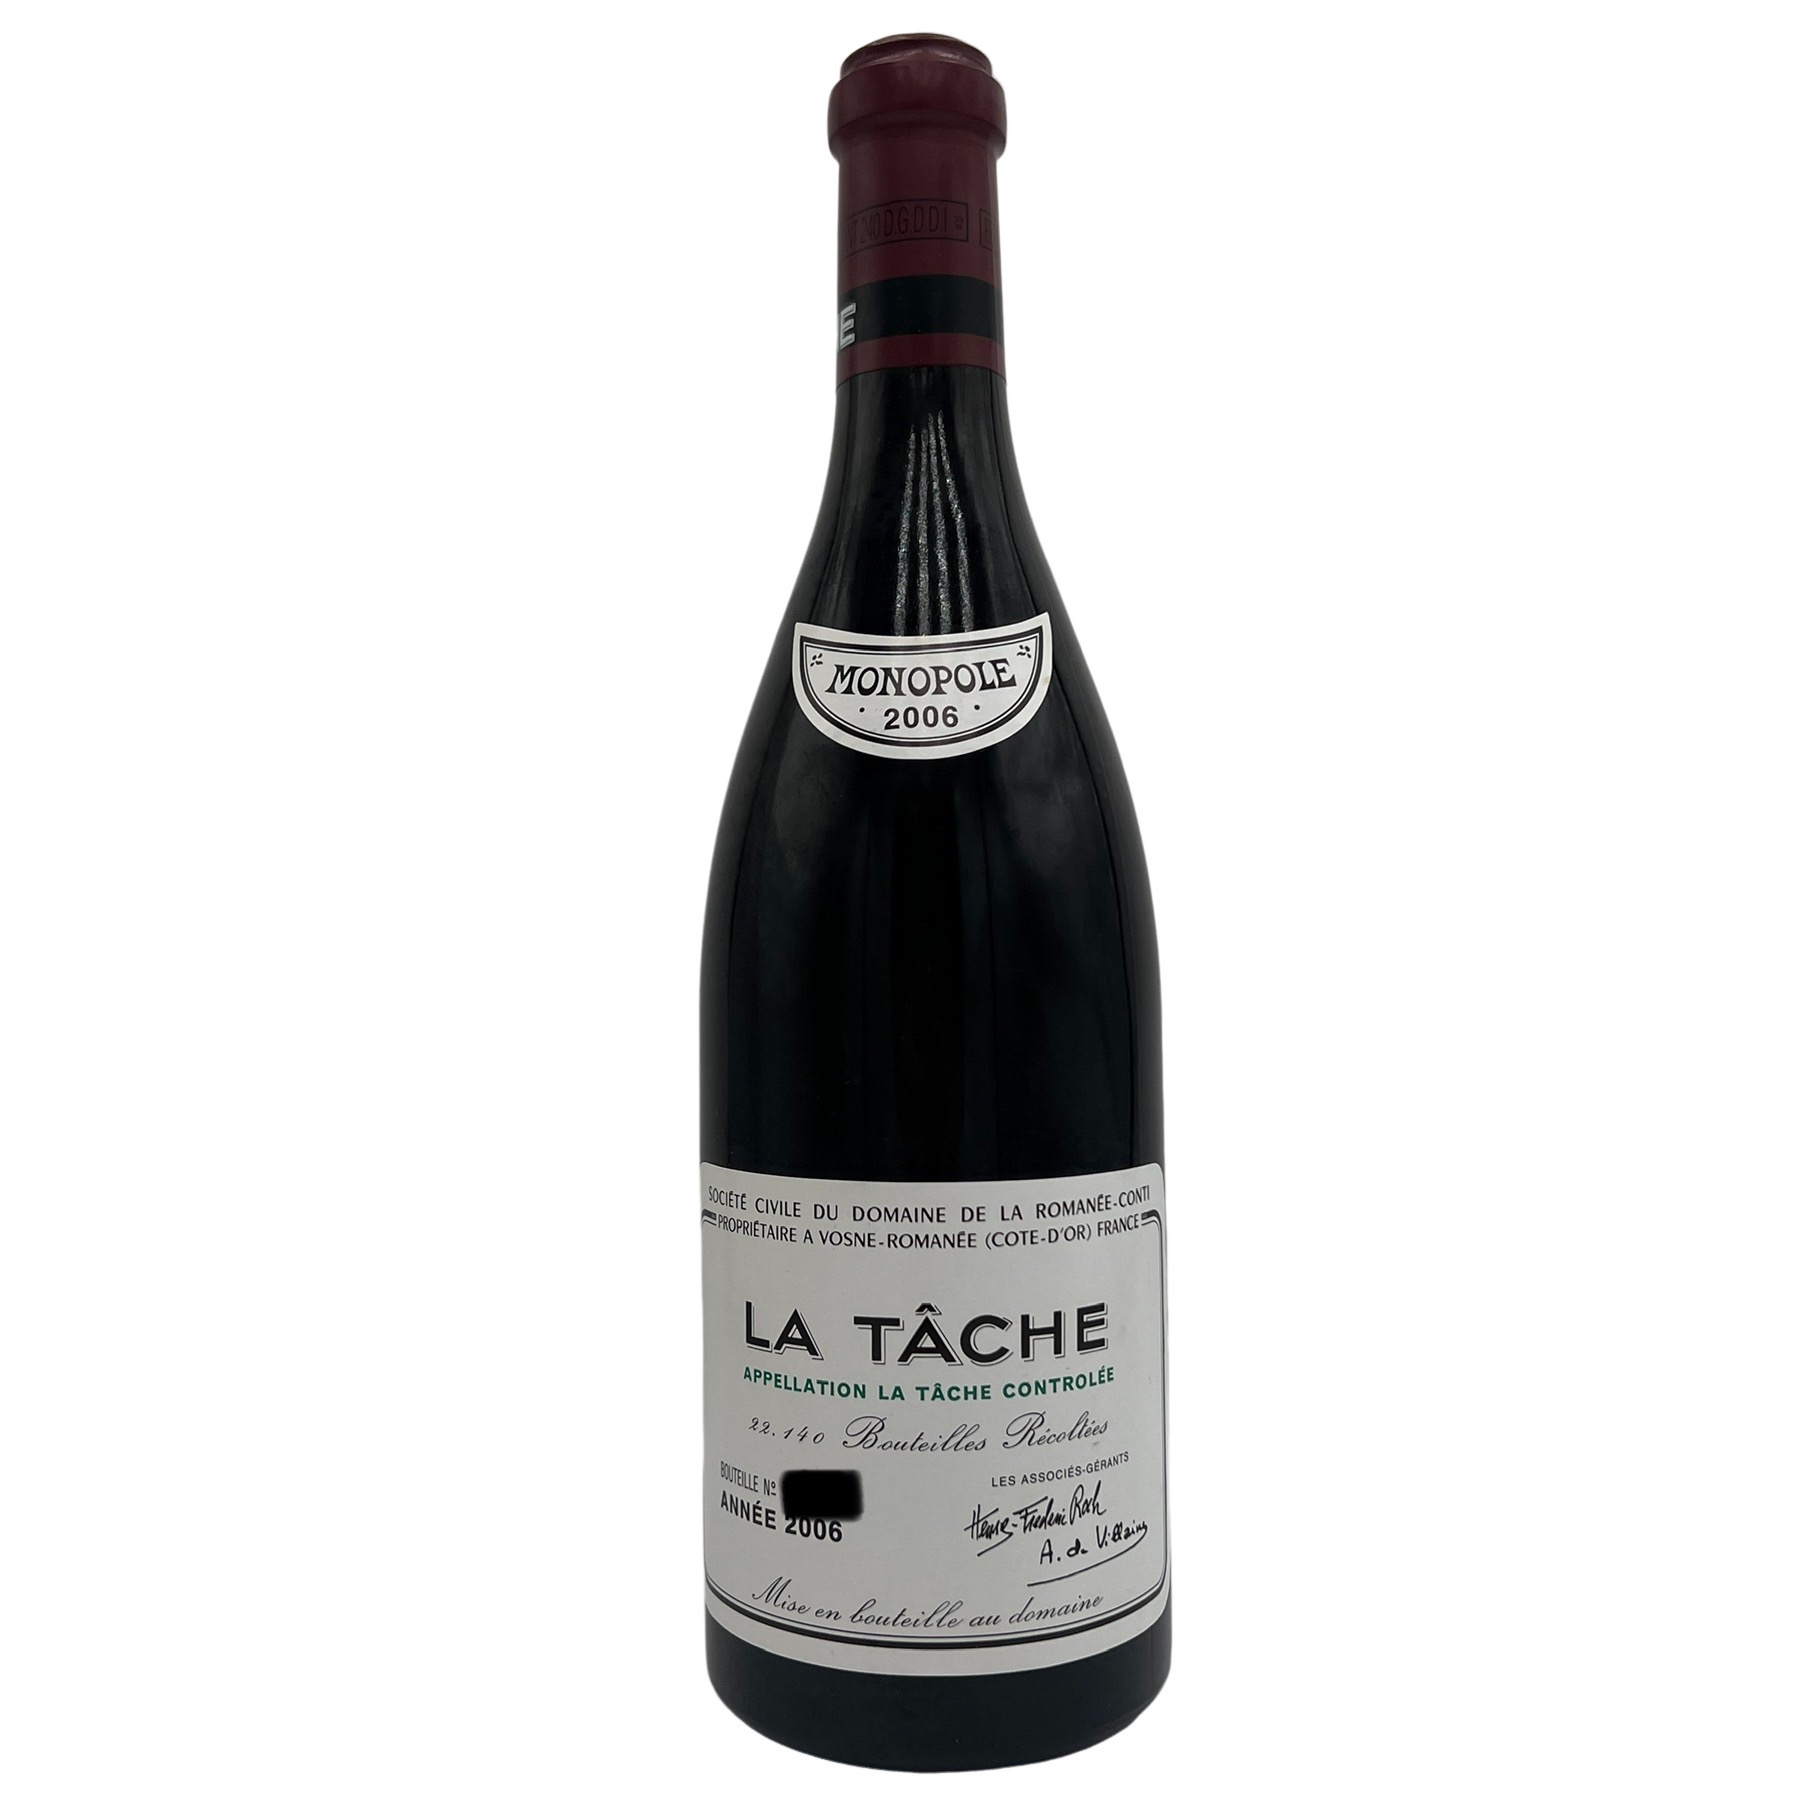 2006年罗曼尼康帝.拉塔希葡萄酒 La Tache 750ml*1